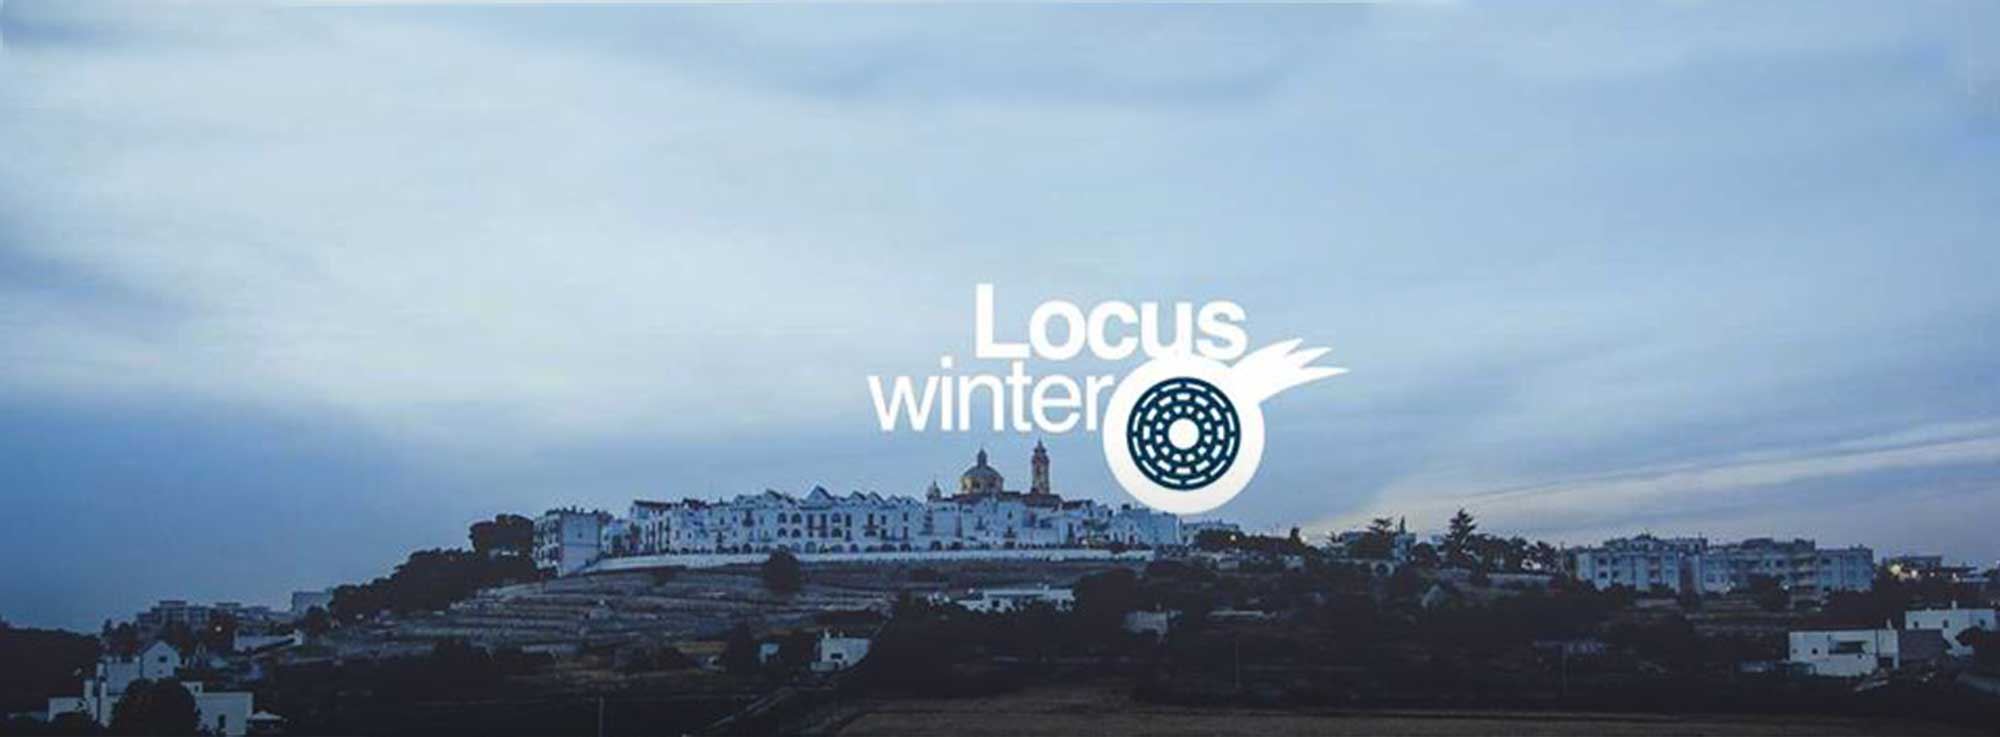 Locorotondo: Locus Winter Festival